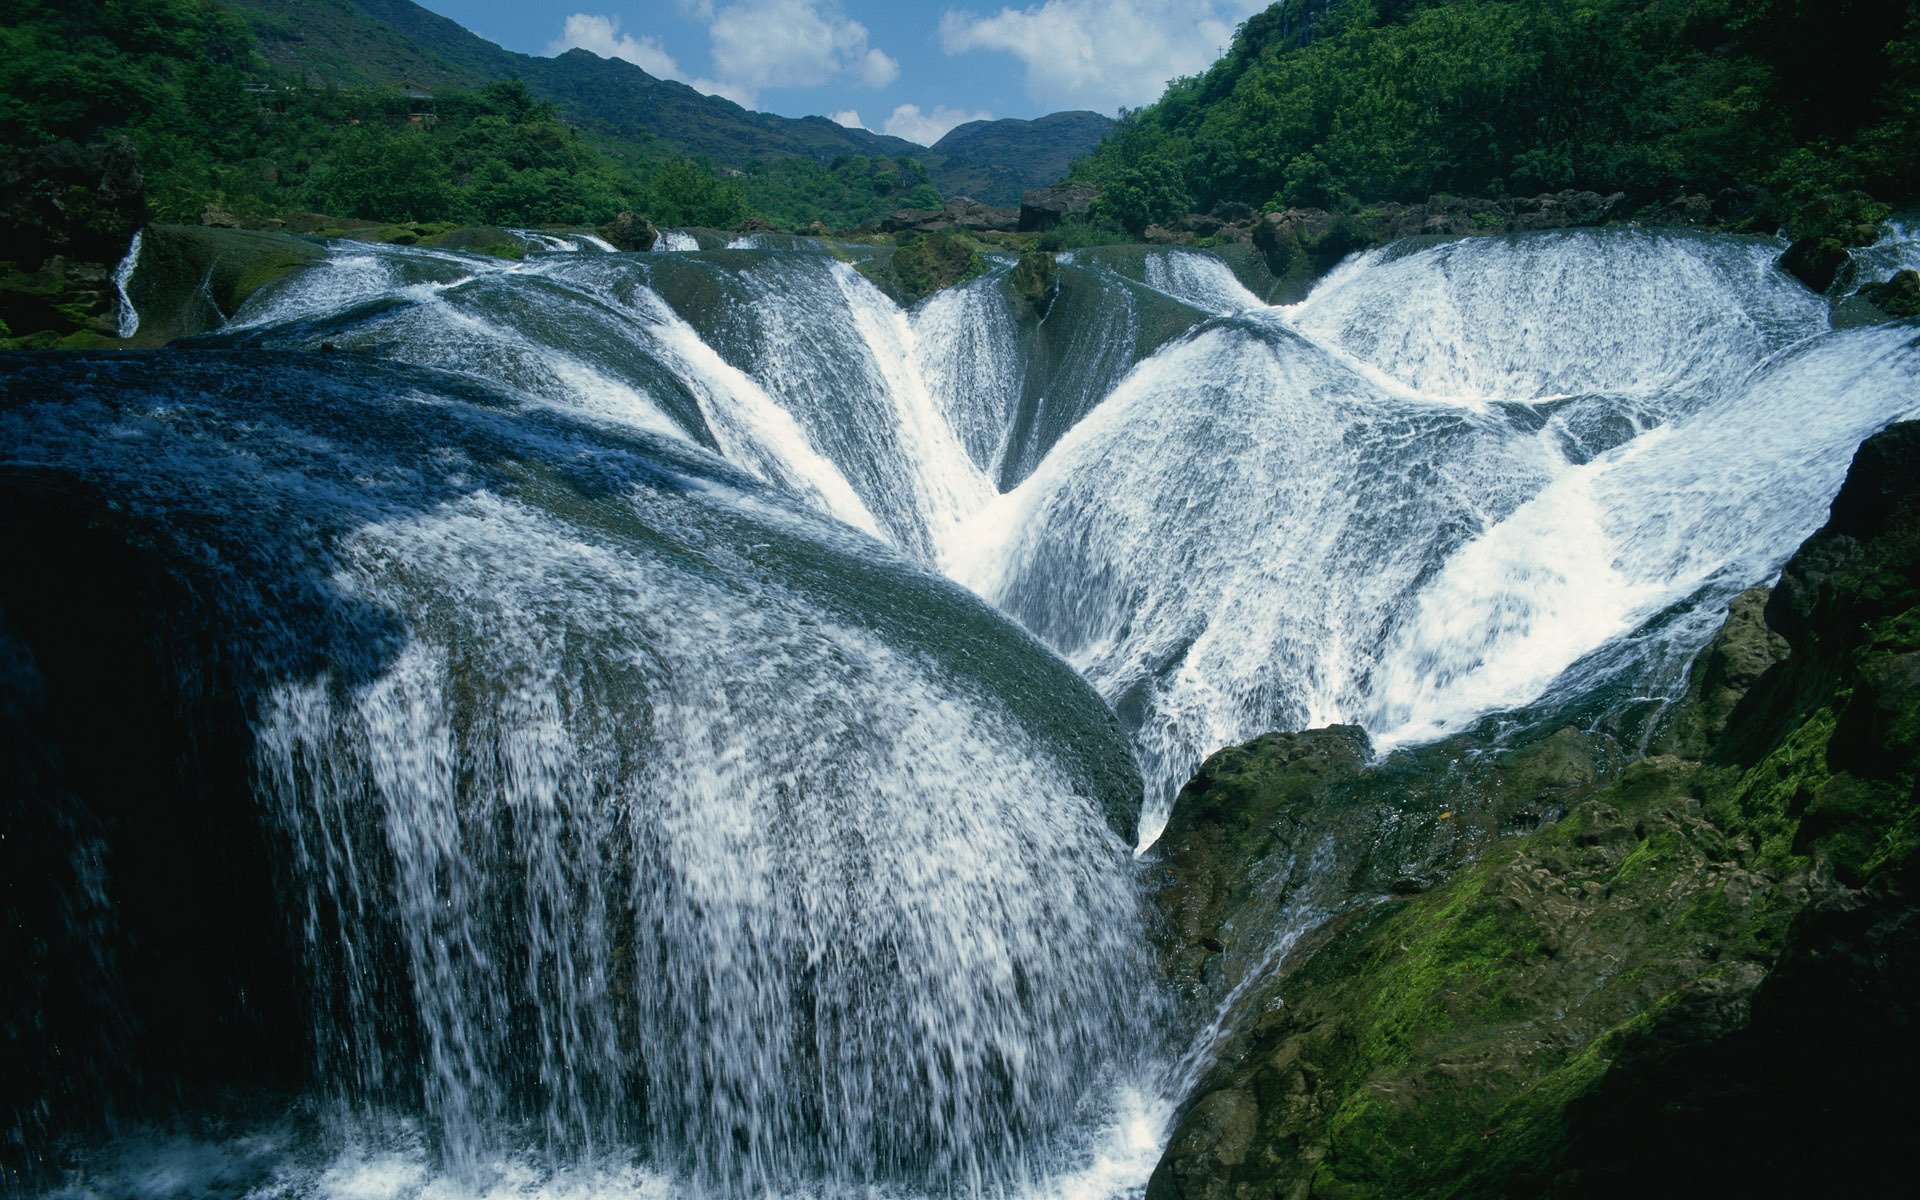 Обои на телефон самые красивые в мире. Хайфорс водопад. Водопад Жемчужина Северная Осетия. Долина водопадов Цзючжайгоу. Водопад в Цзючжайгоу (Китай).